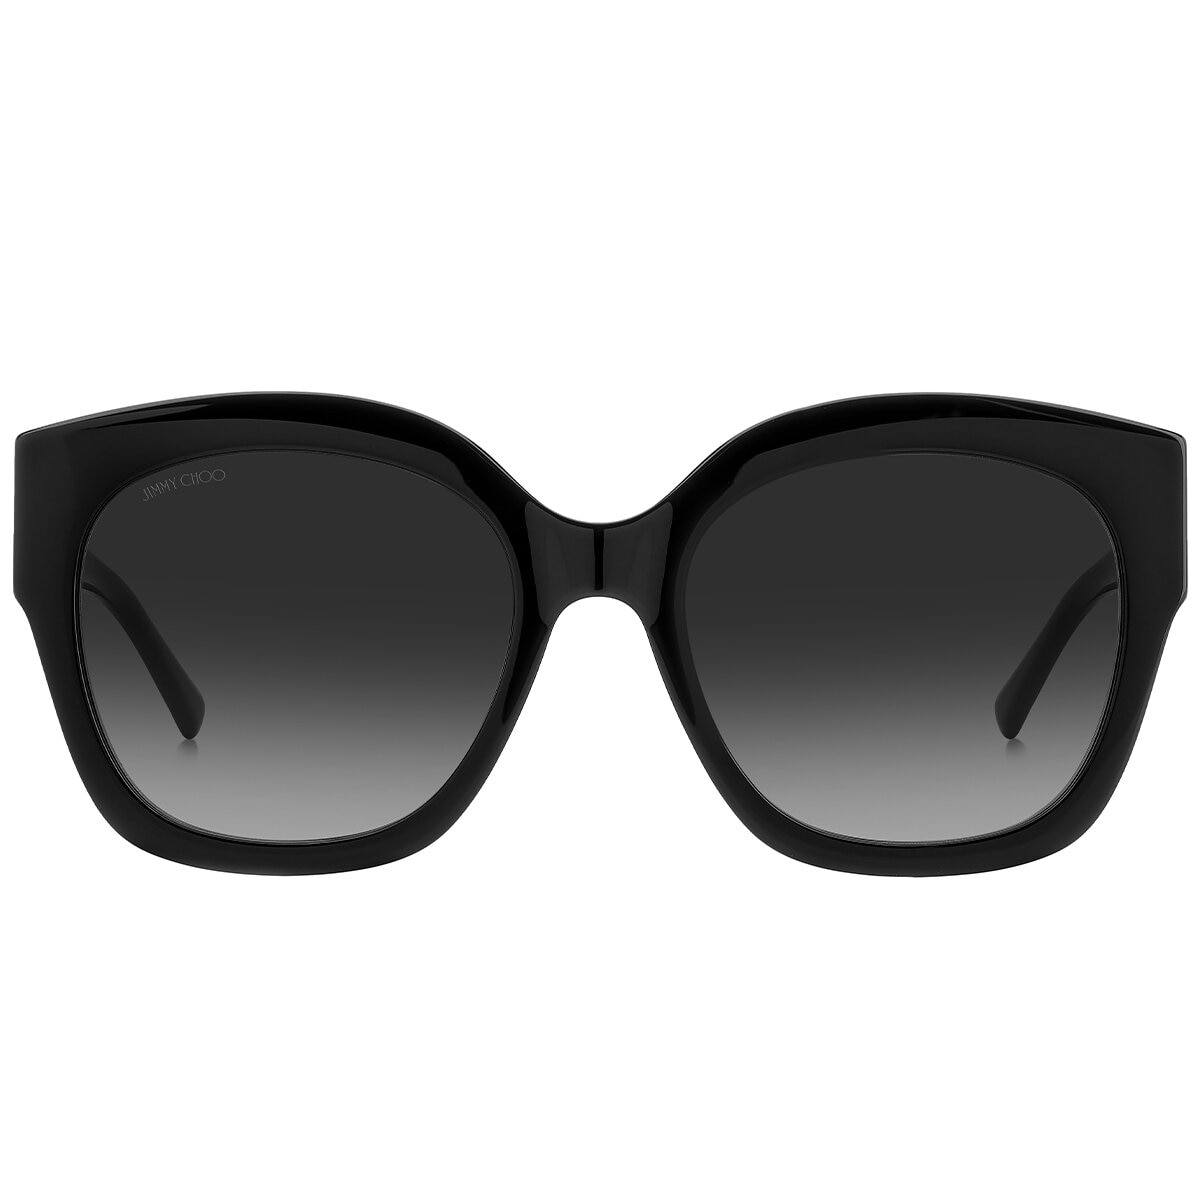 Jimmy Choo Leela/s Women's Sunglasses